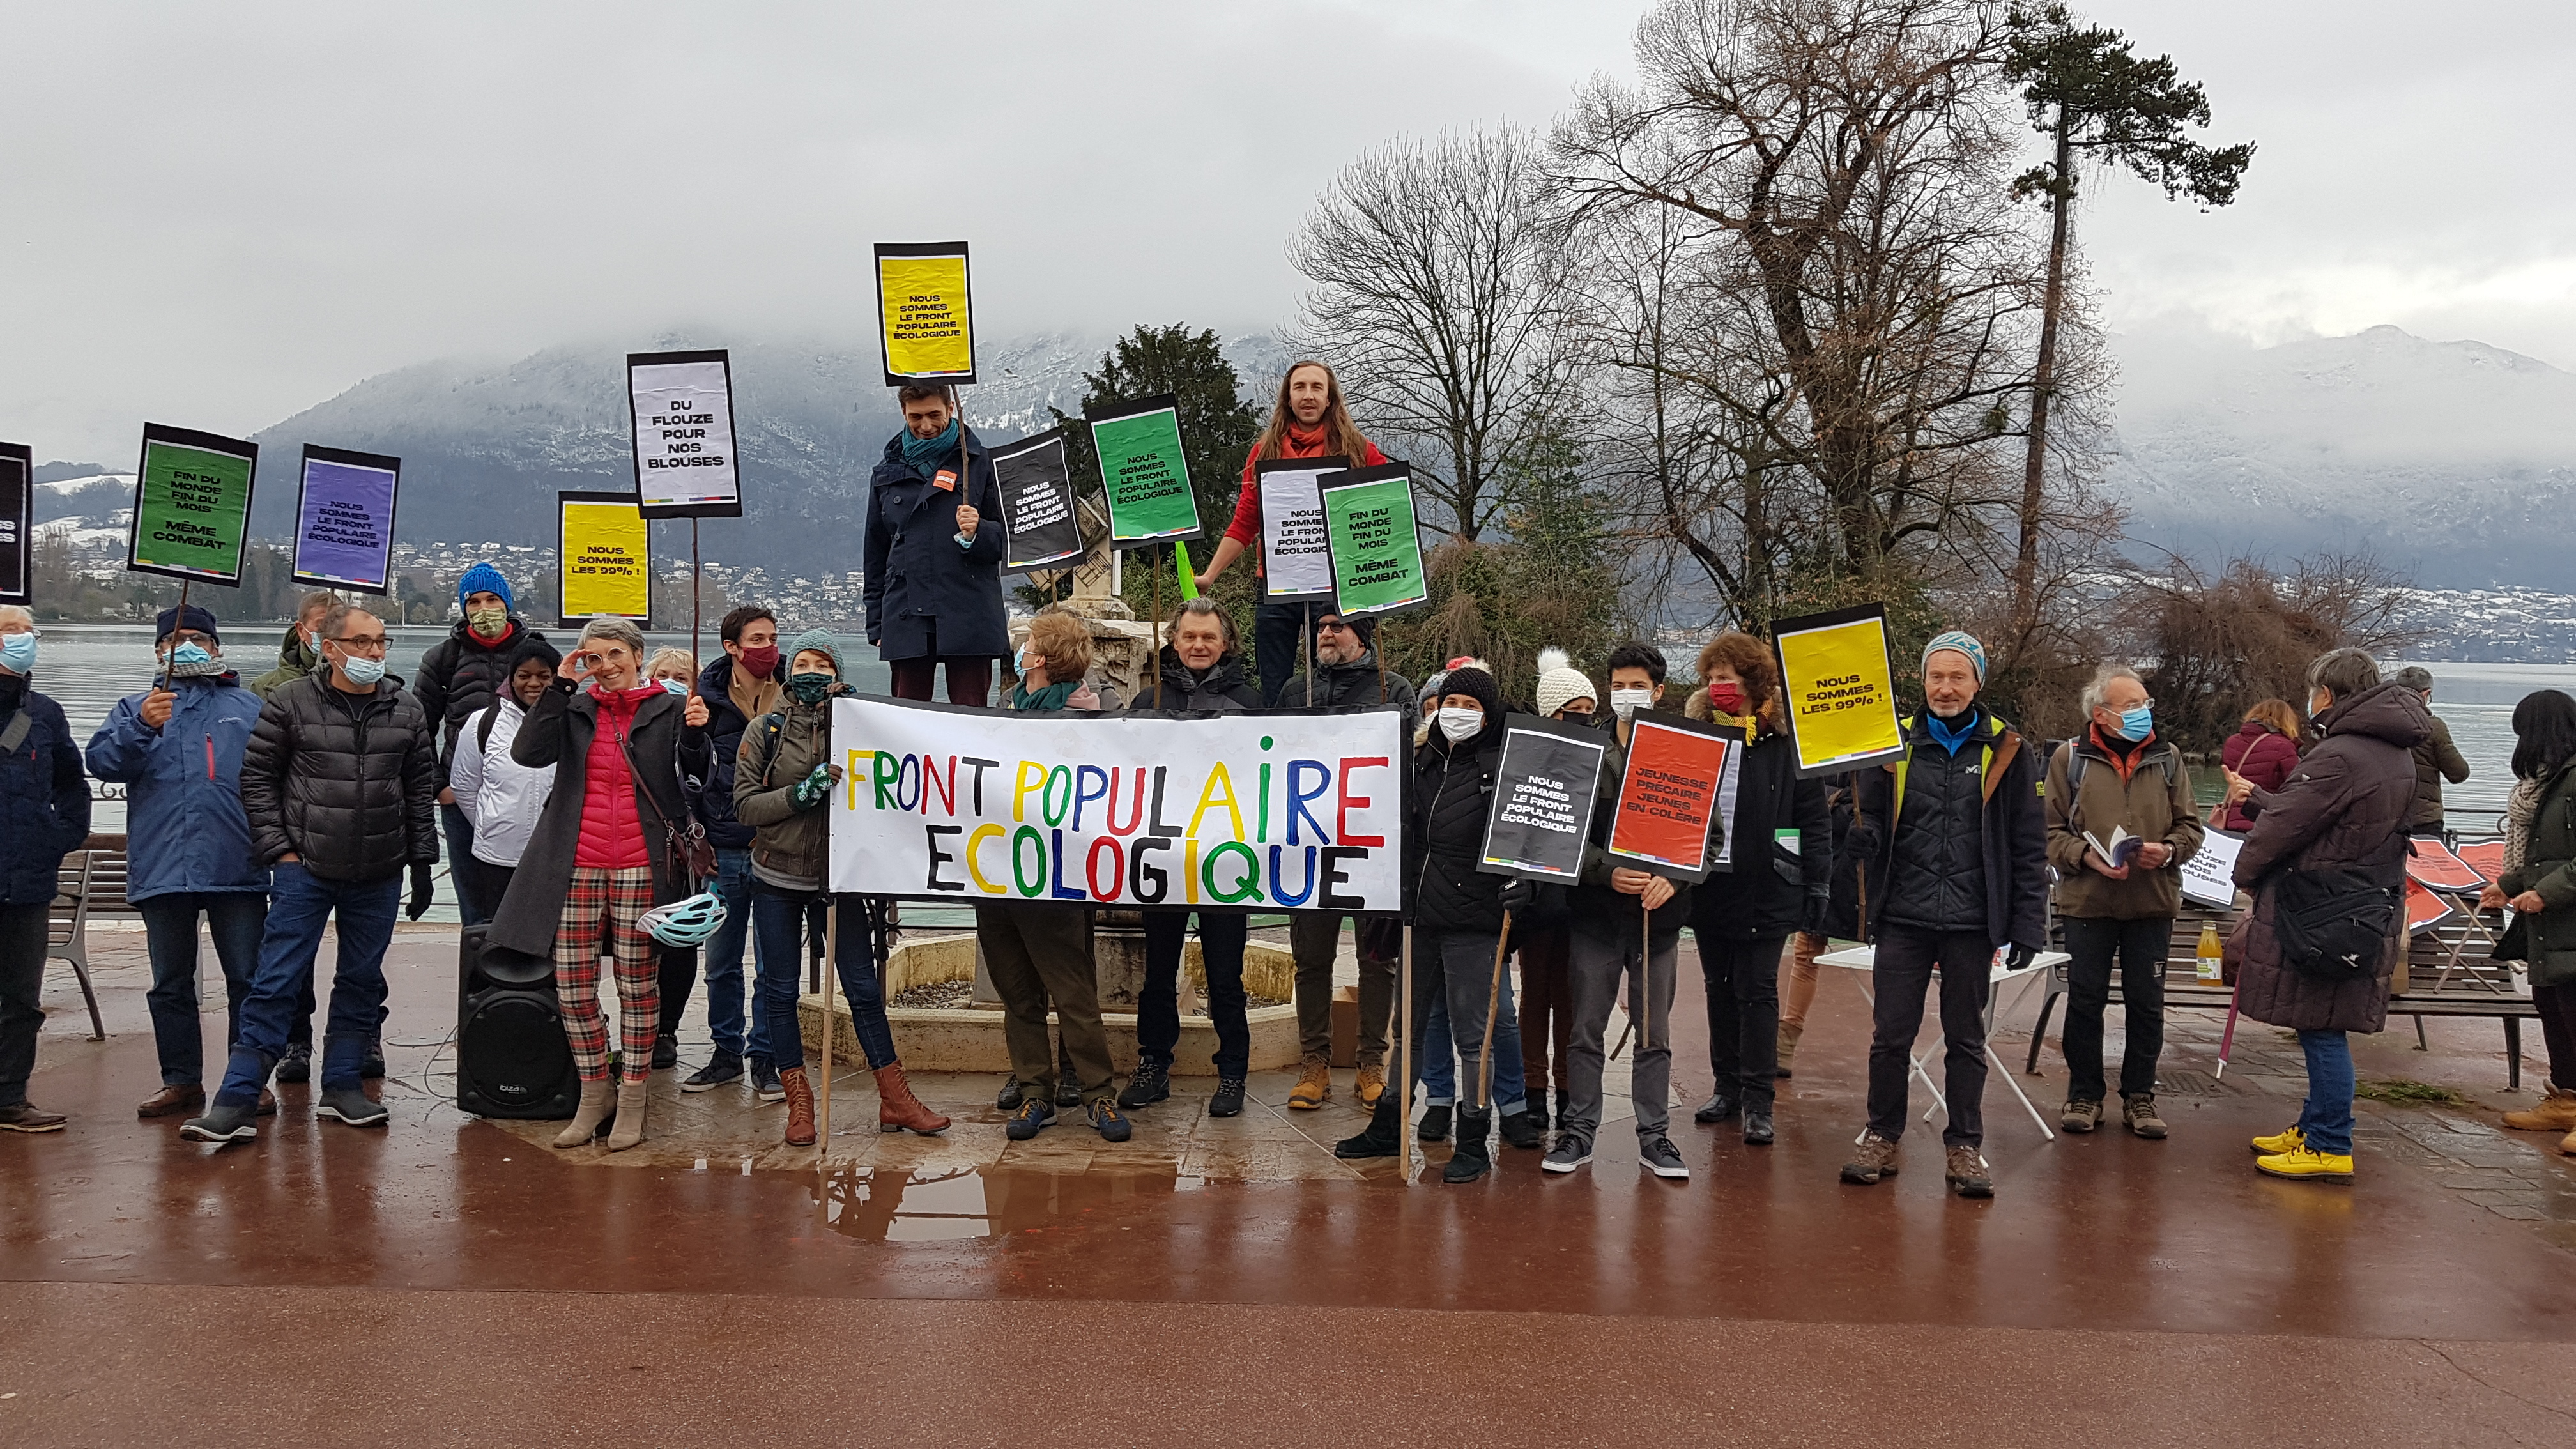 Rassemblement hier à Annecy pour un front populaire écologiste